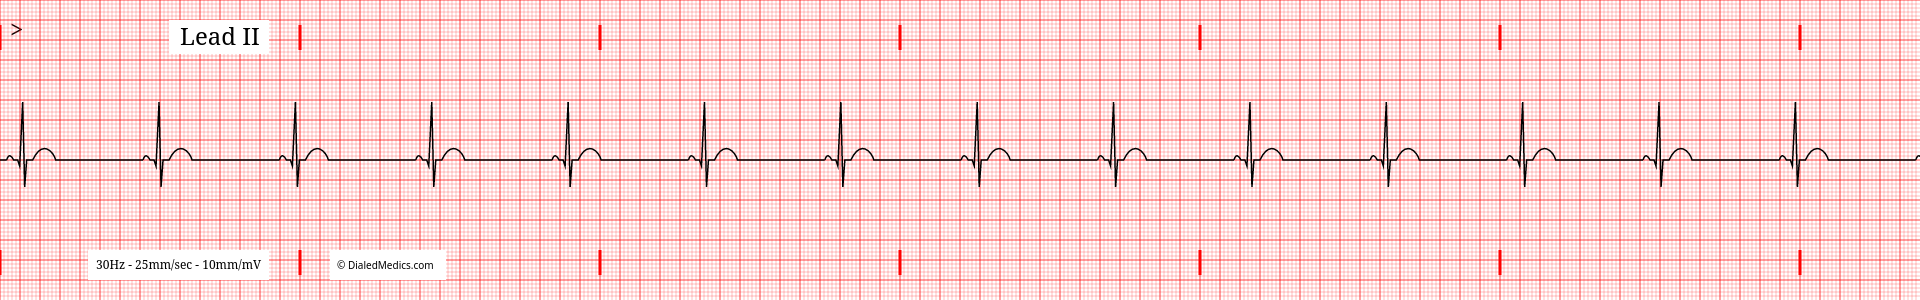 Example ECG without baseline artifact.